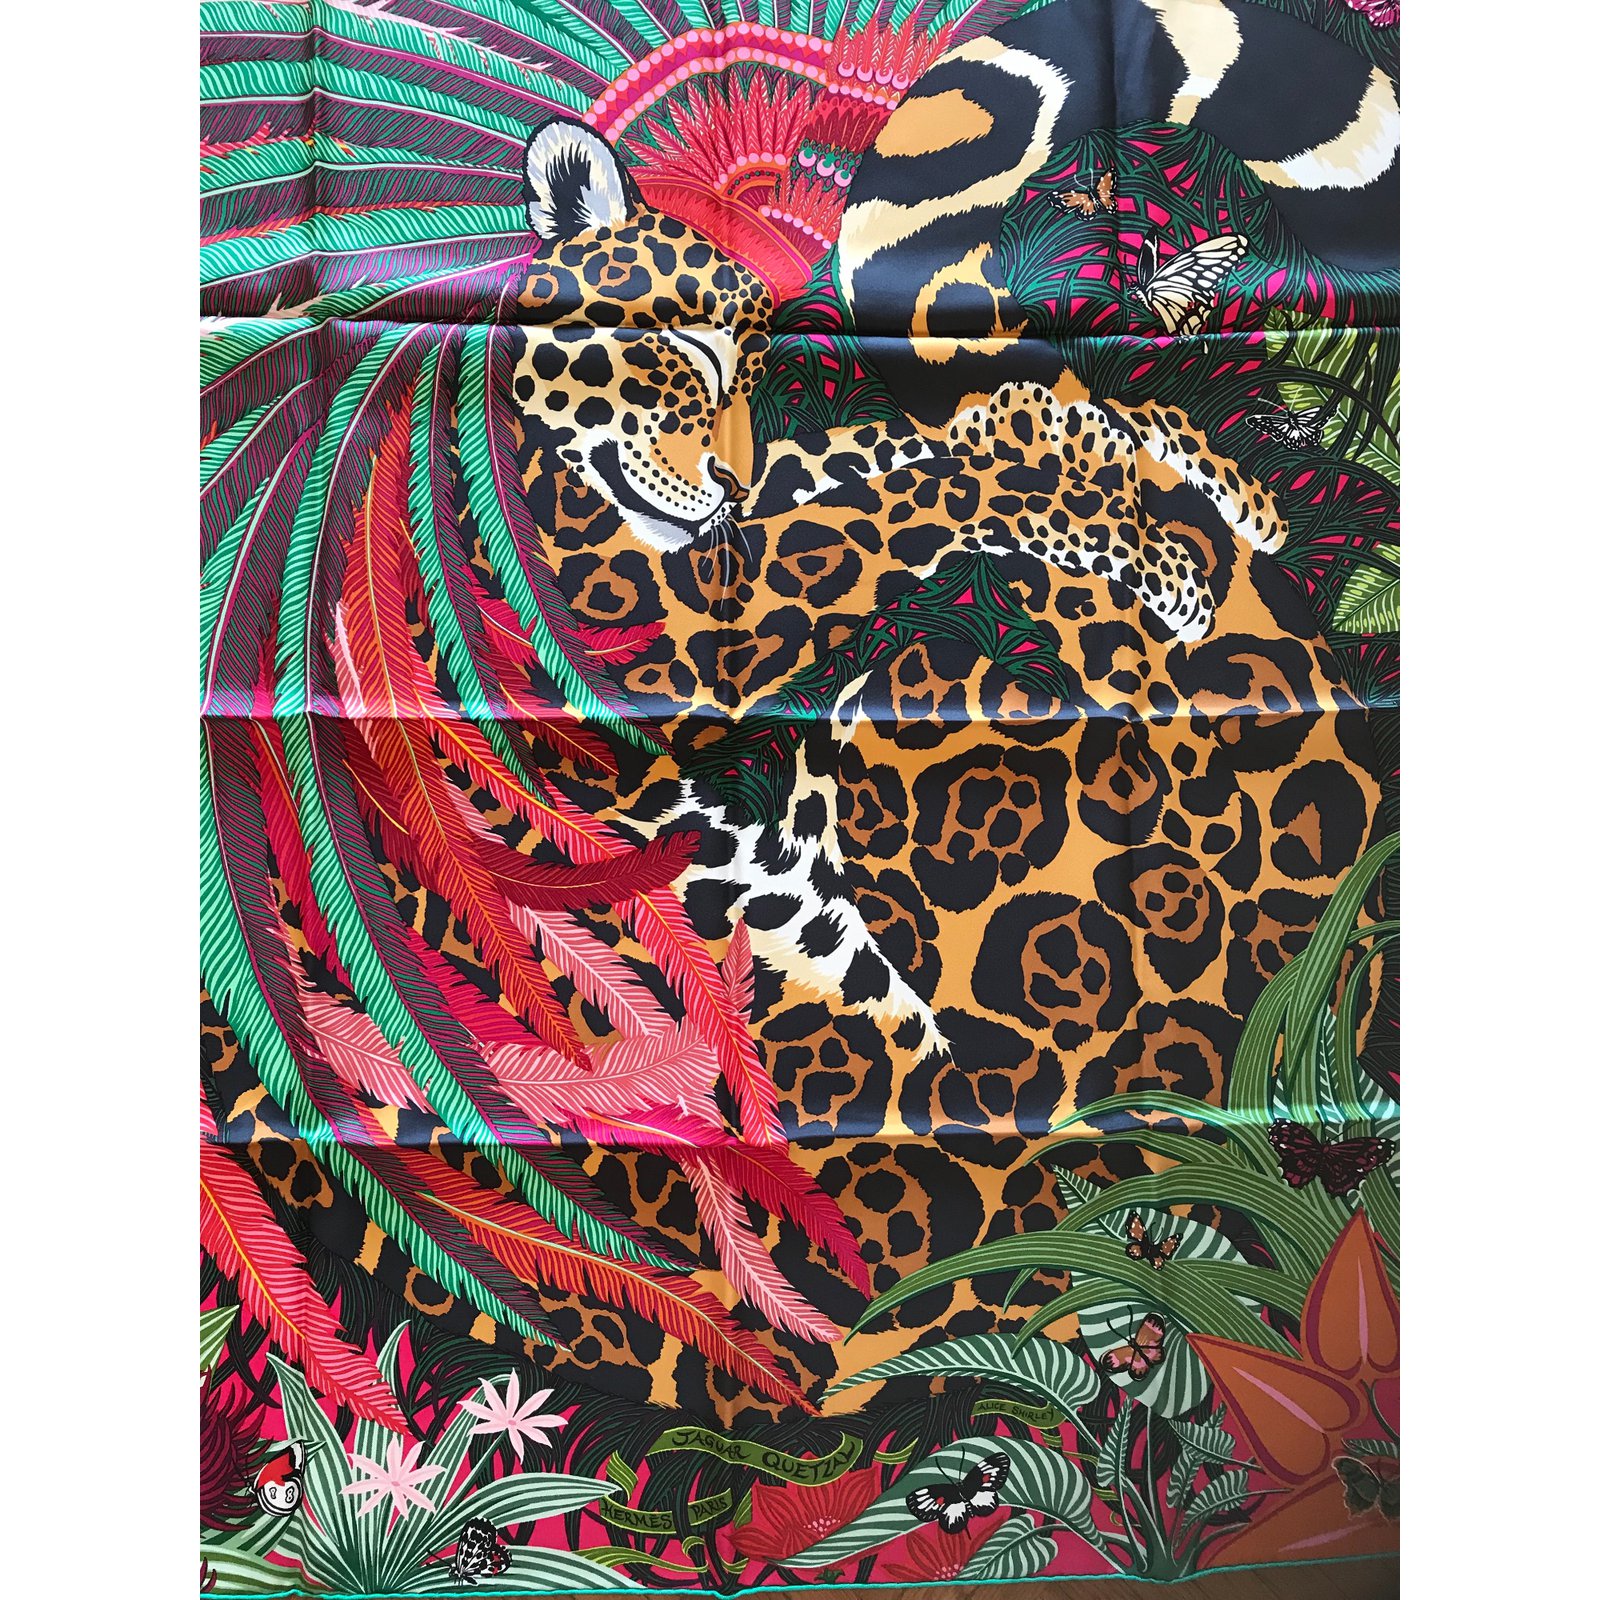 jaguar quetzal